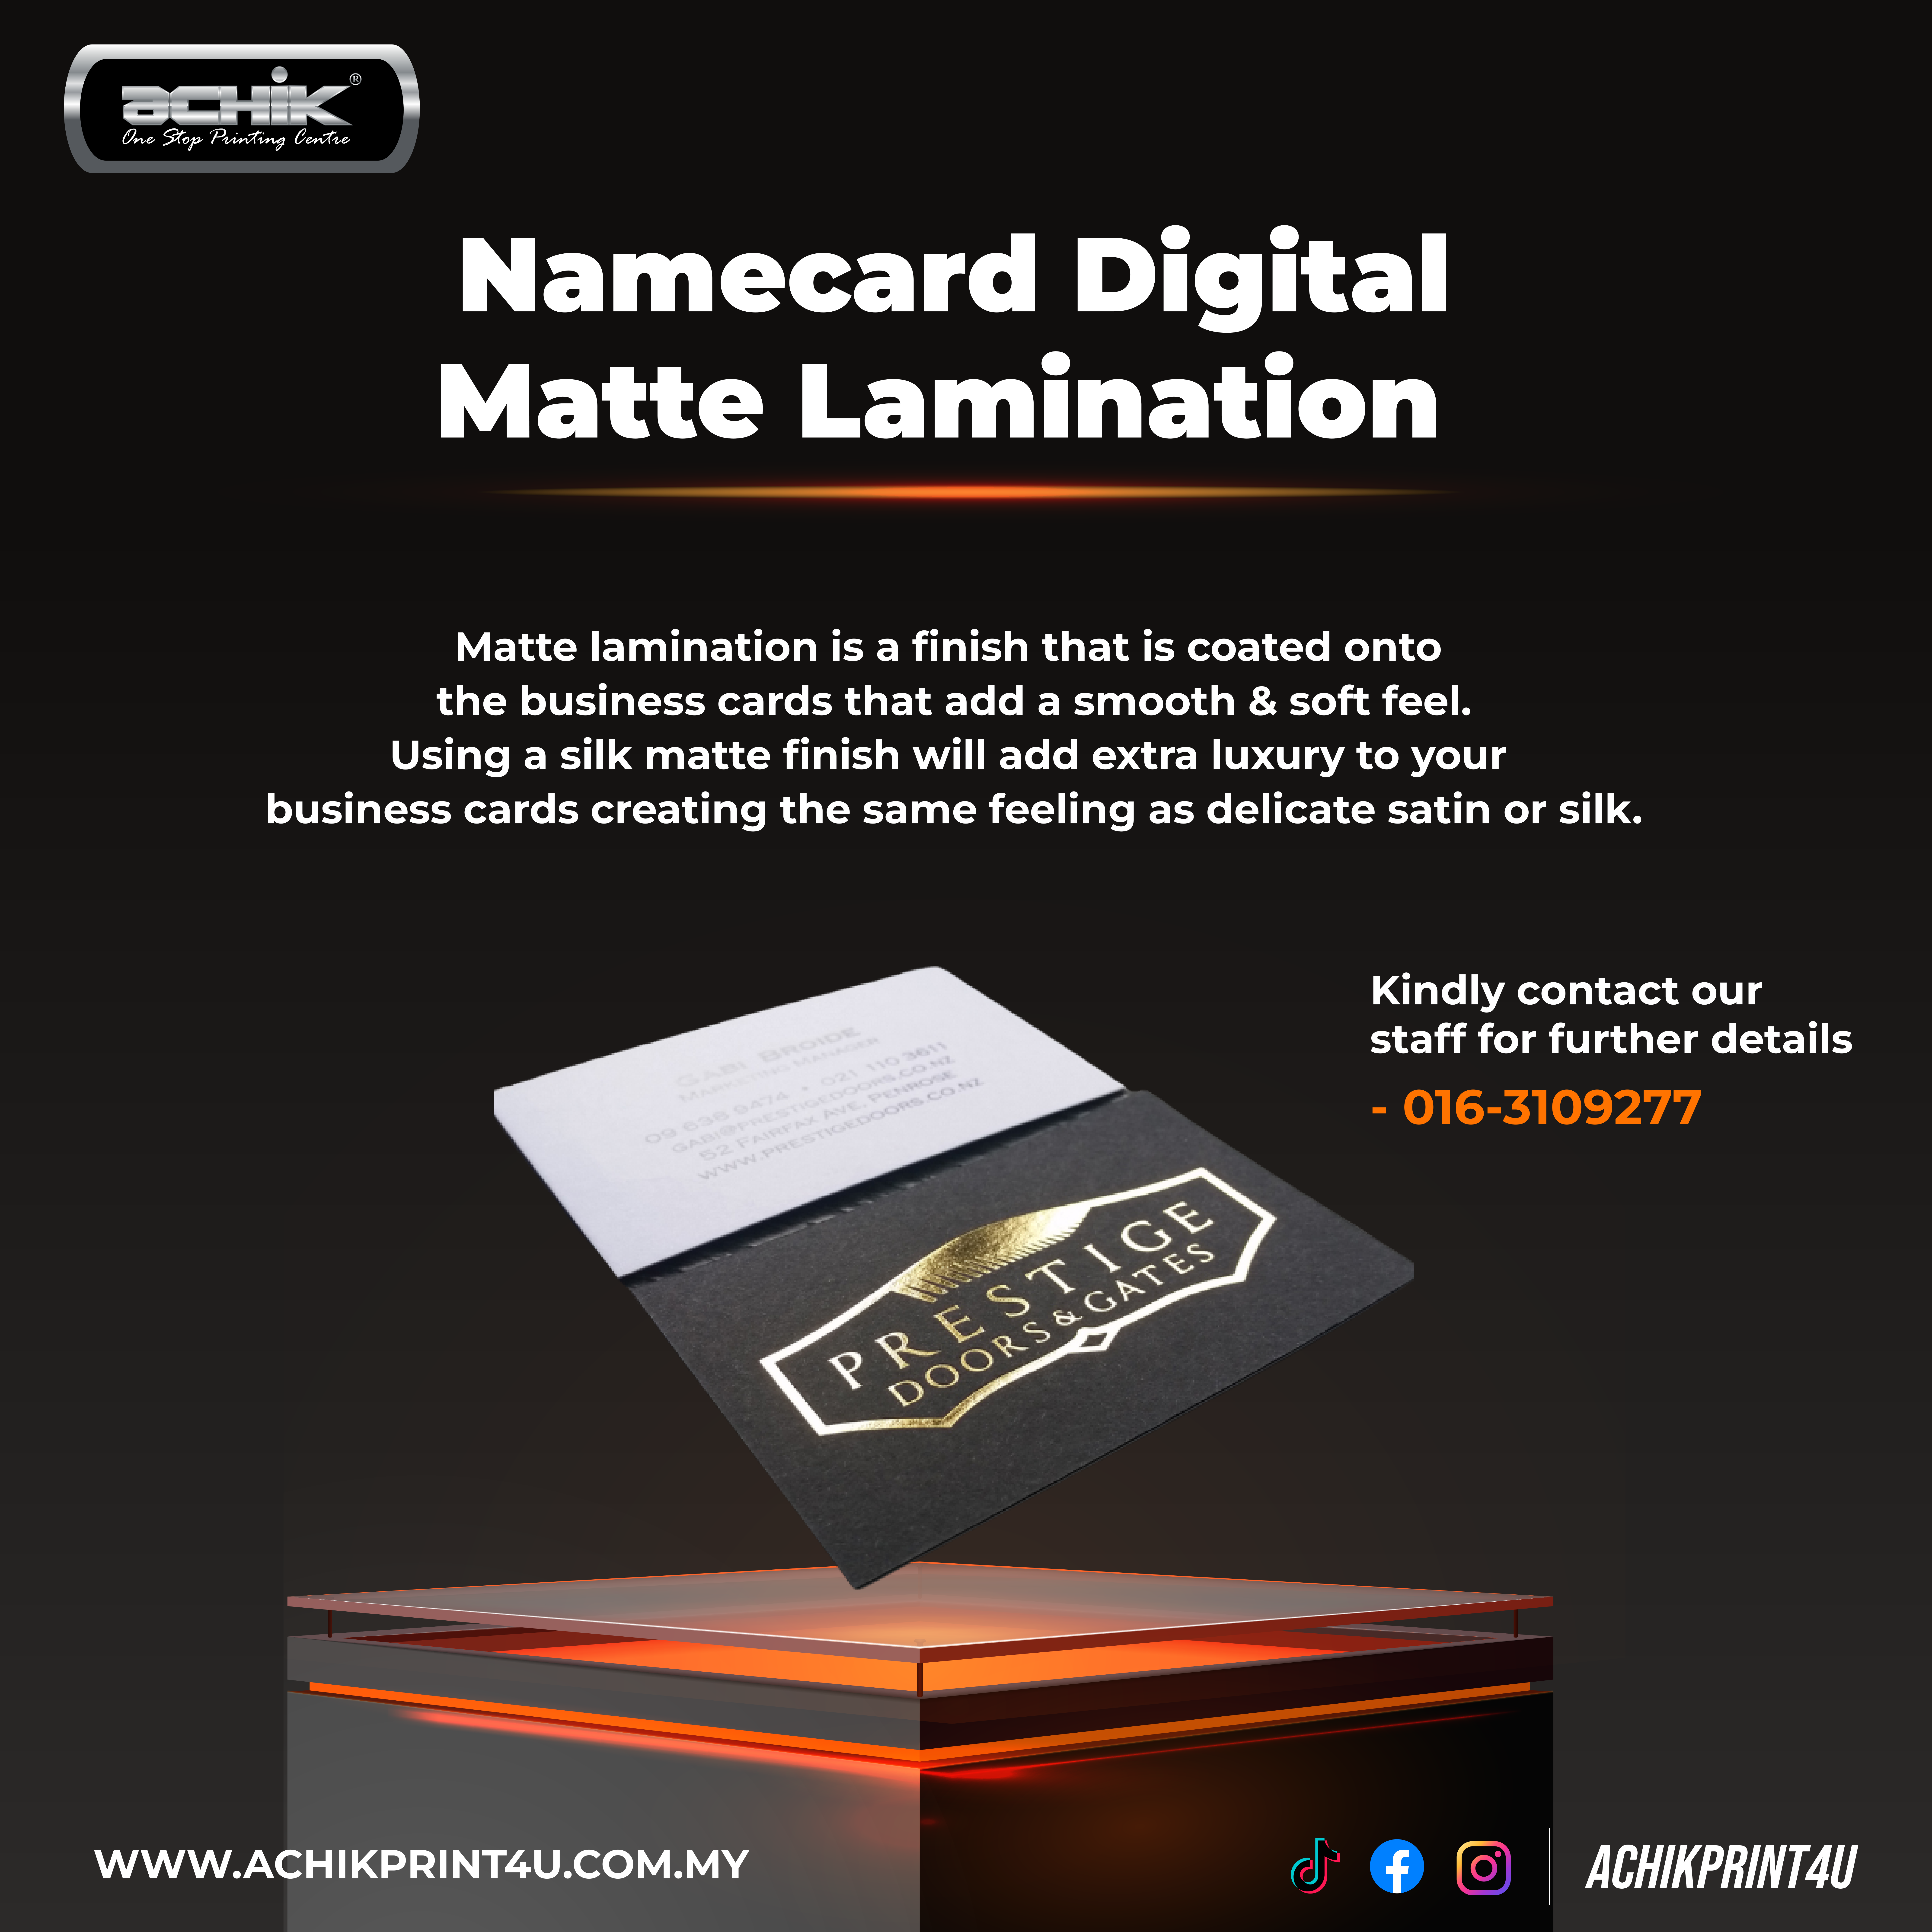 Namecard Digital - Matte Lamination